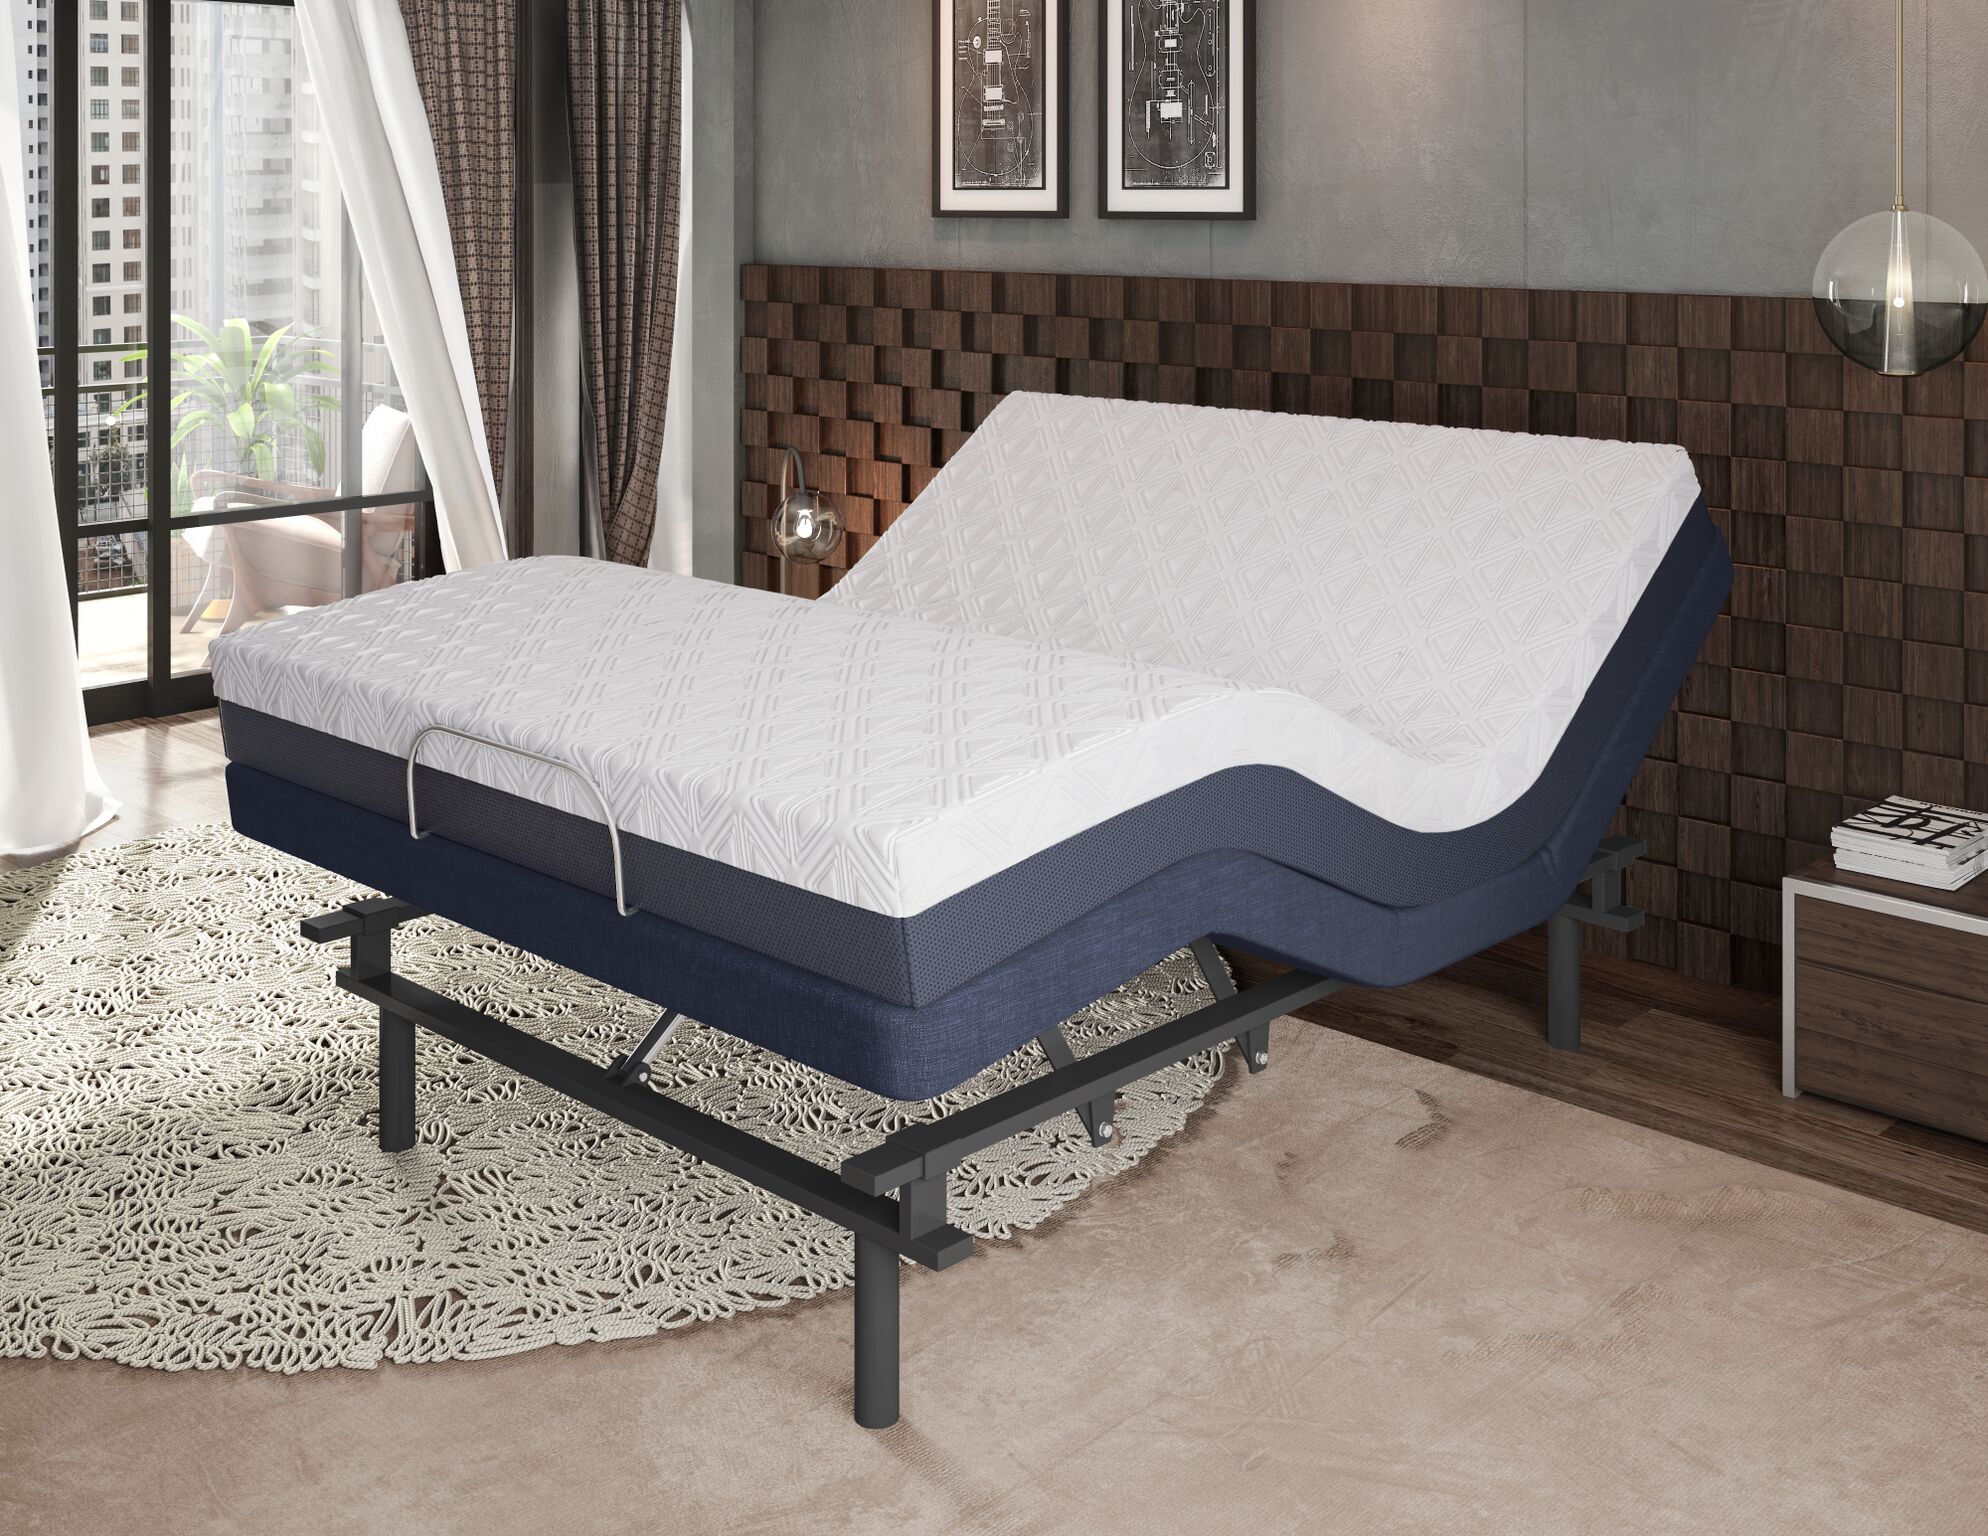 most cumfortagle queen size adjustable mattress